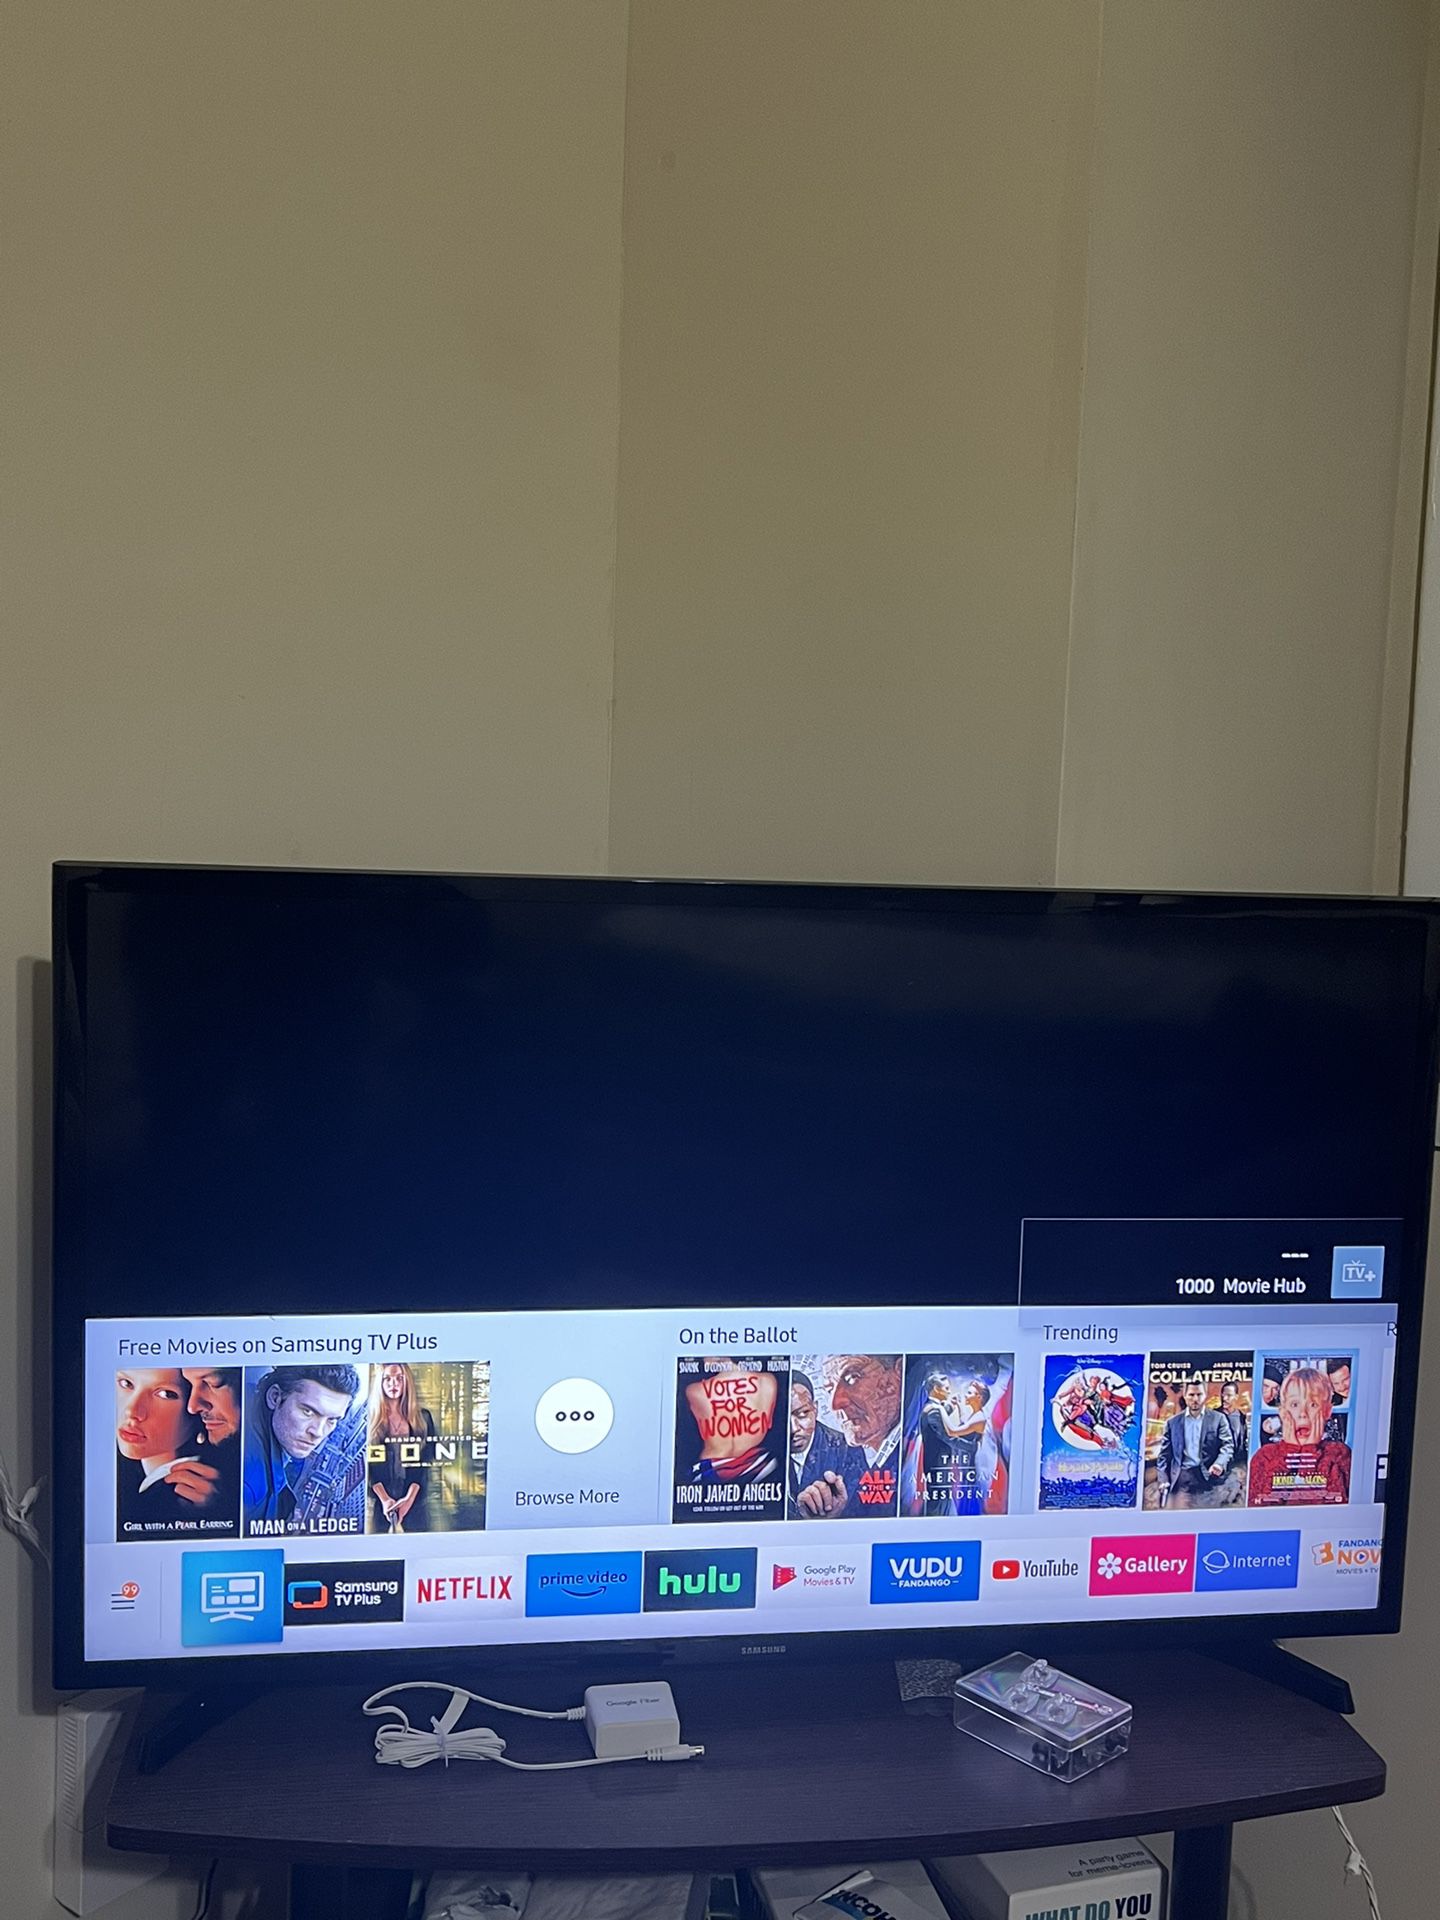 Samsung - 40" Class 5 Series LED Full HD Smart Tizen TV 